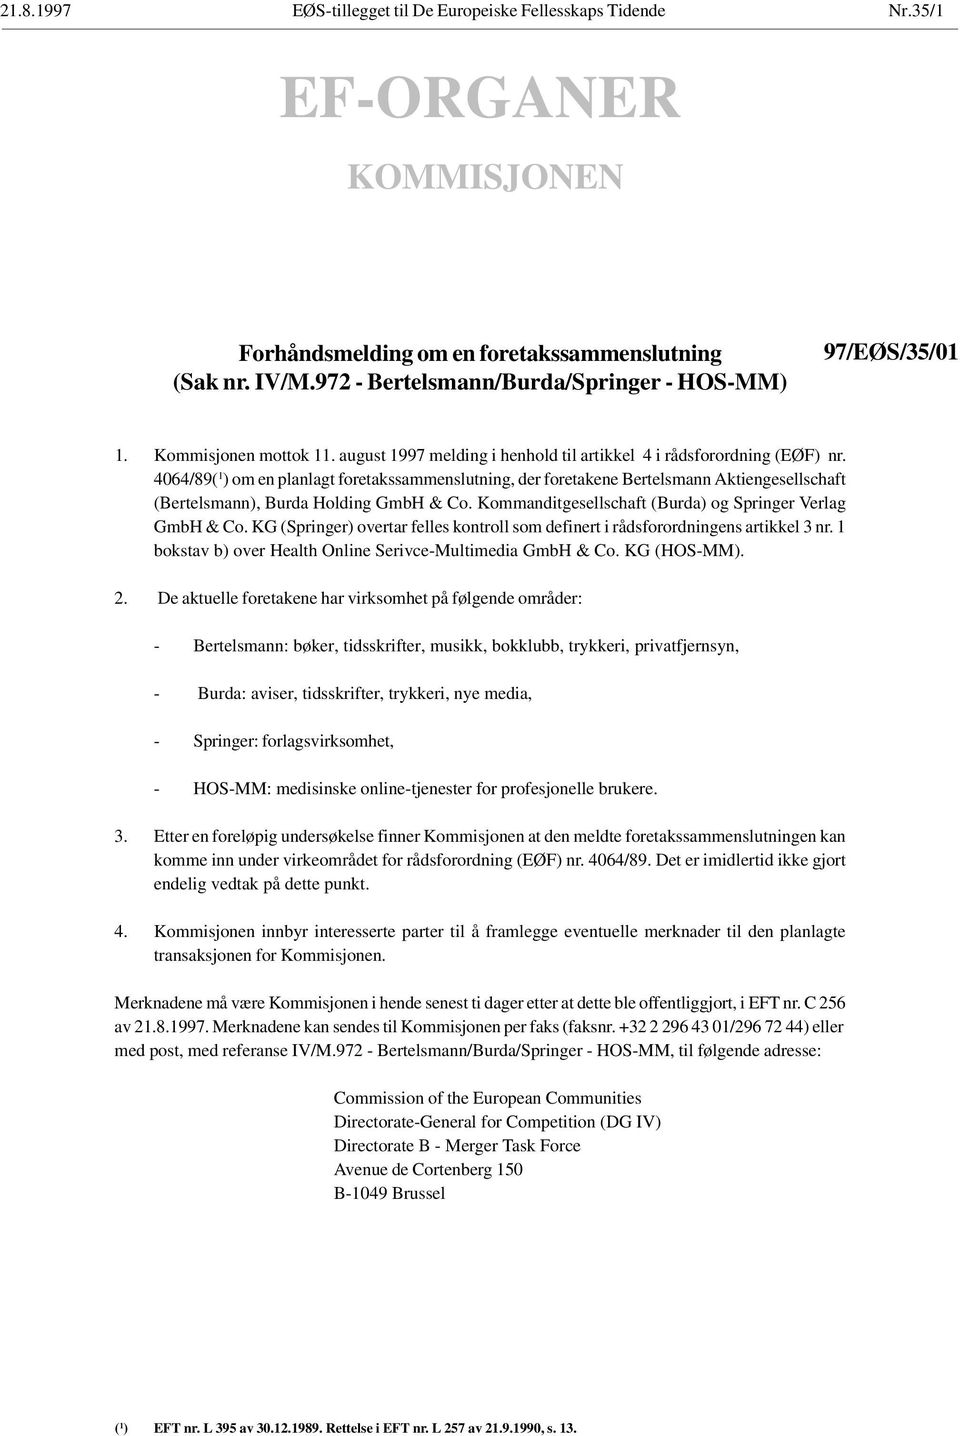 4064/89( 1 ) om en planlagt foretakssammenslutning, der foretakene Bertelsmann Aktiengesellschaft (Bertelsmann), Burda Holding GmbH & Co. Kommanditgesellschaft (Burda) og Springer Verlag GmbH & Co.